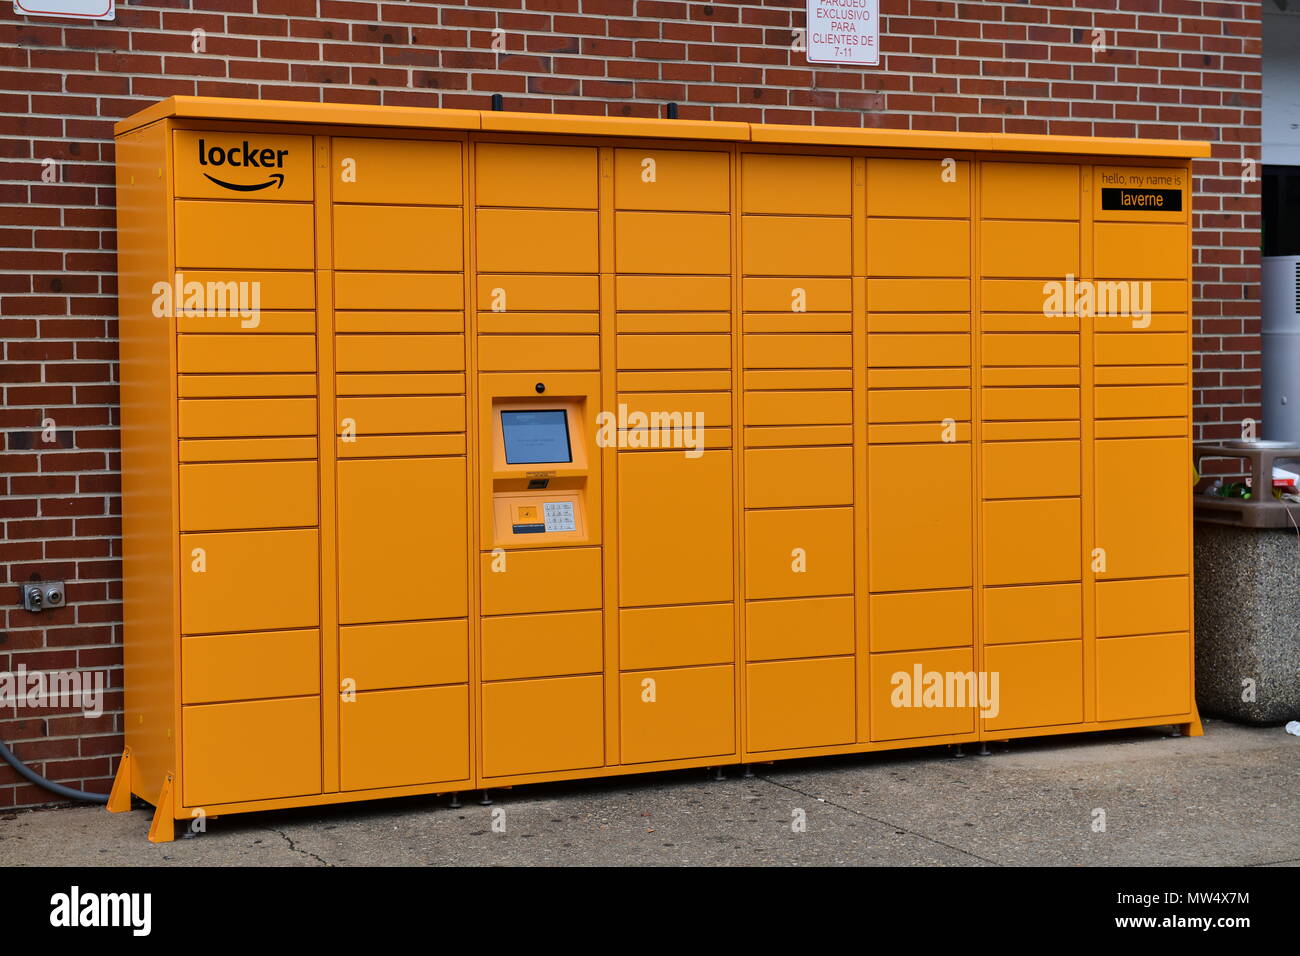 Amazon le casier d'un système de communication sûr qu'Amazon utilise dans les lieux publics pour le ramassage et le retour des colis Banque D'Images